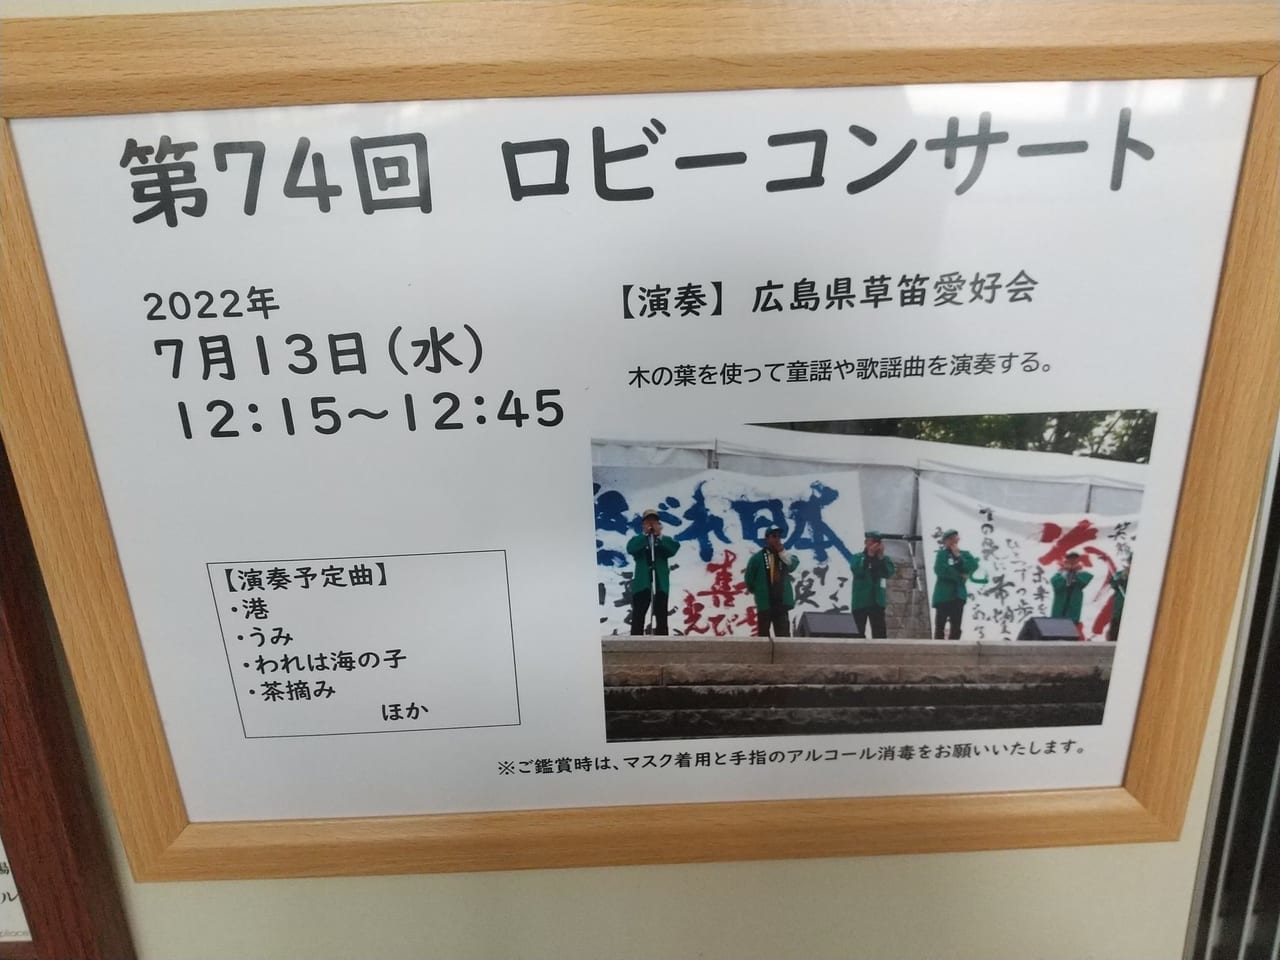 東広島芸術文化ホールくらら「第74回ロビーコンサート」のチラシ